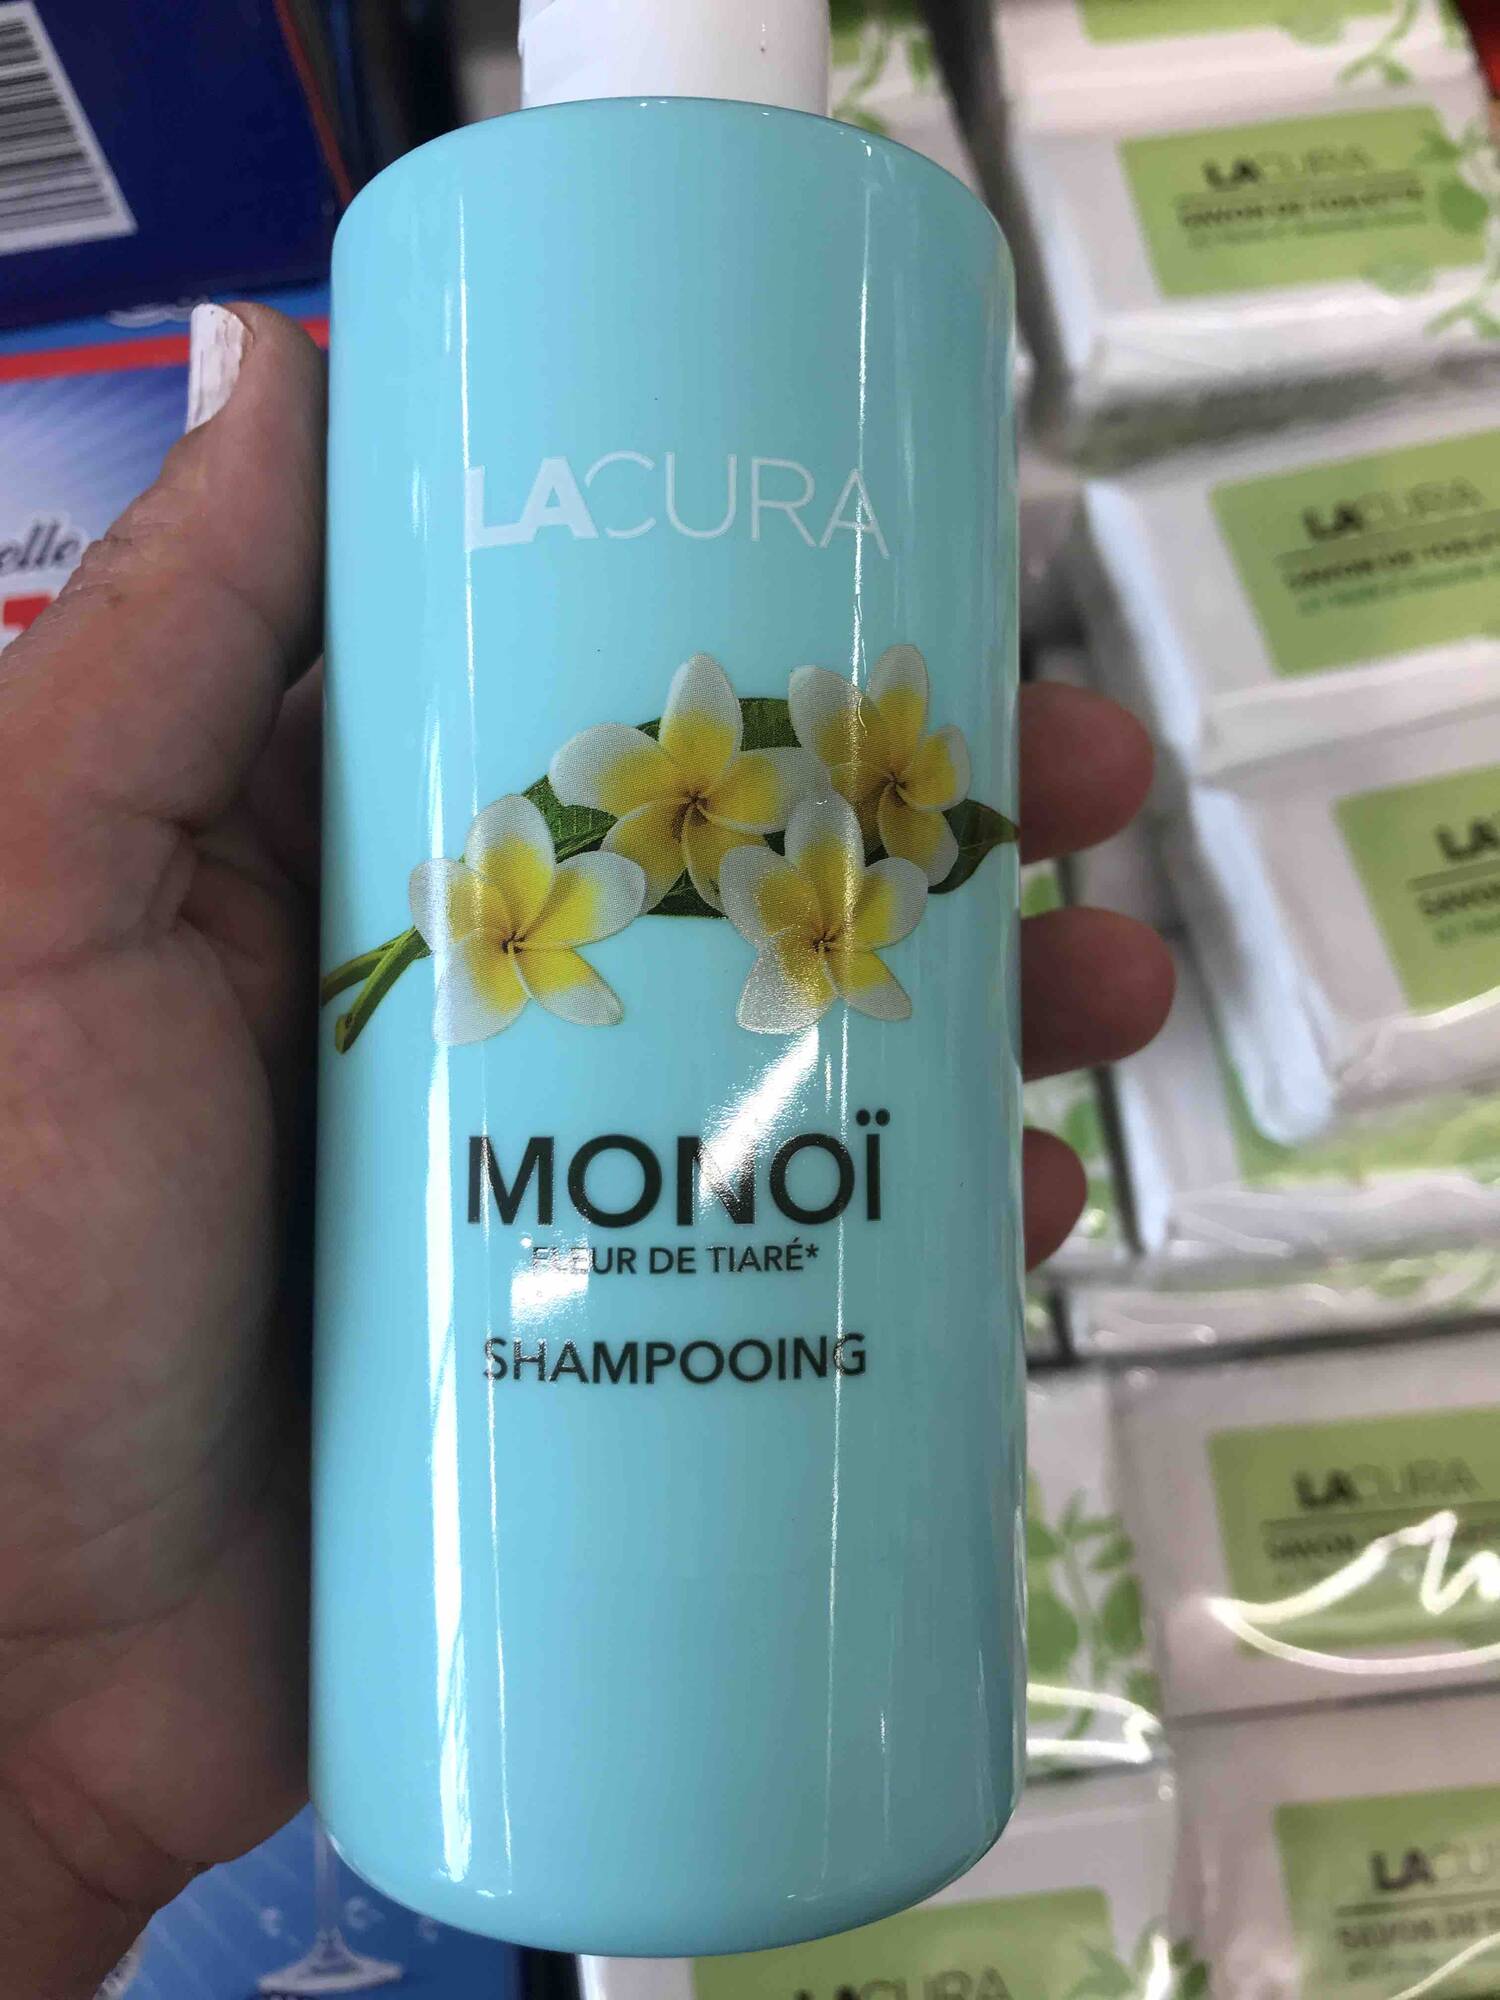 LACURA - Monoï fleur de tiaré - Shampooing